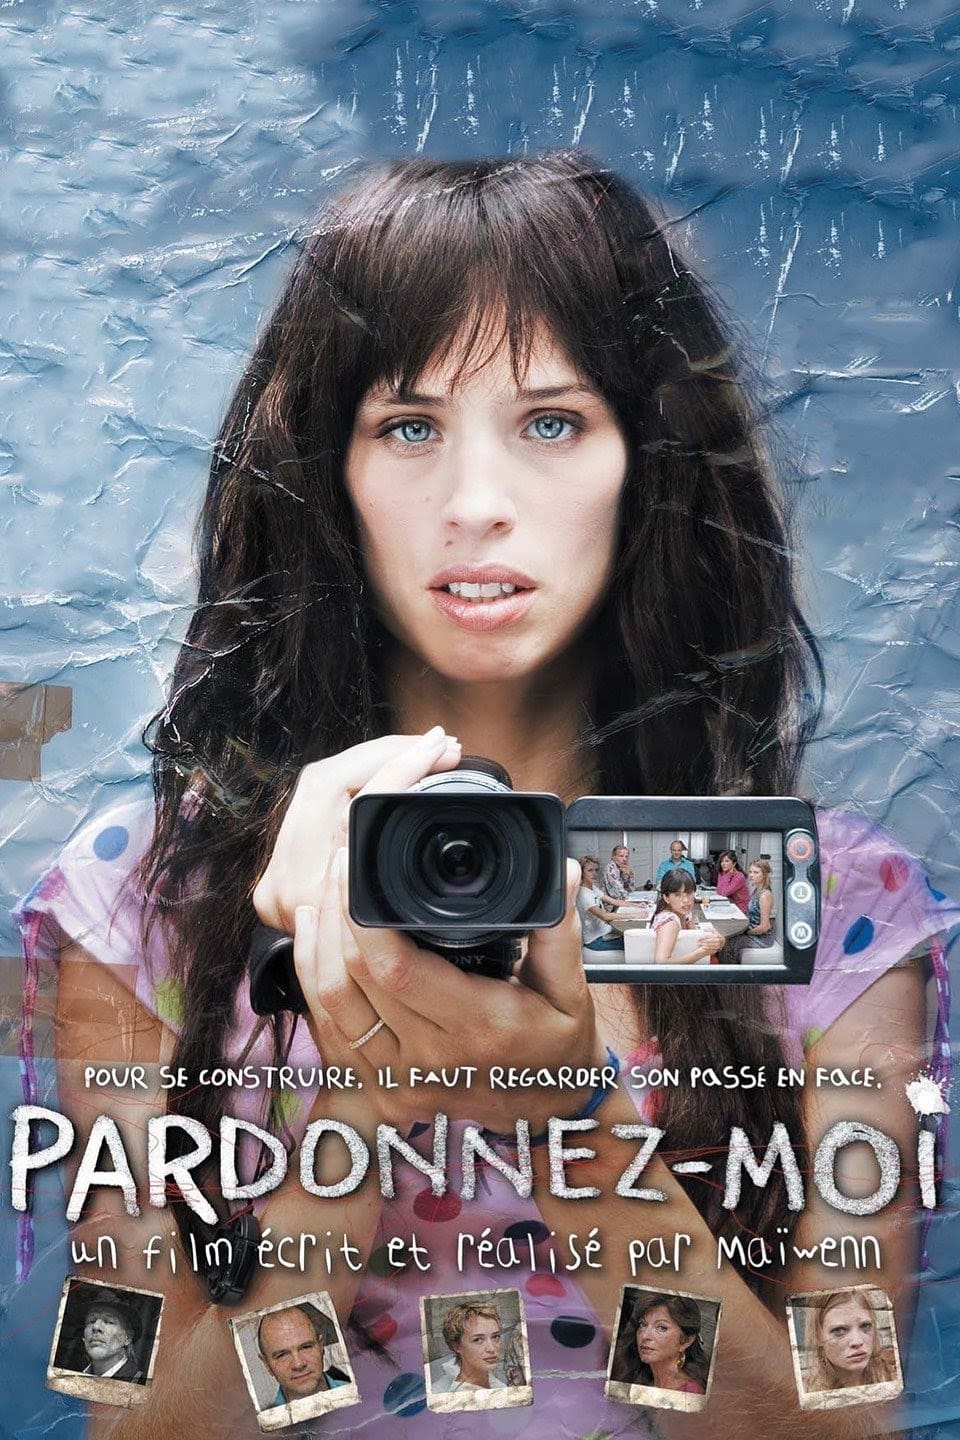 Pardonnez-moi (2006)